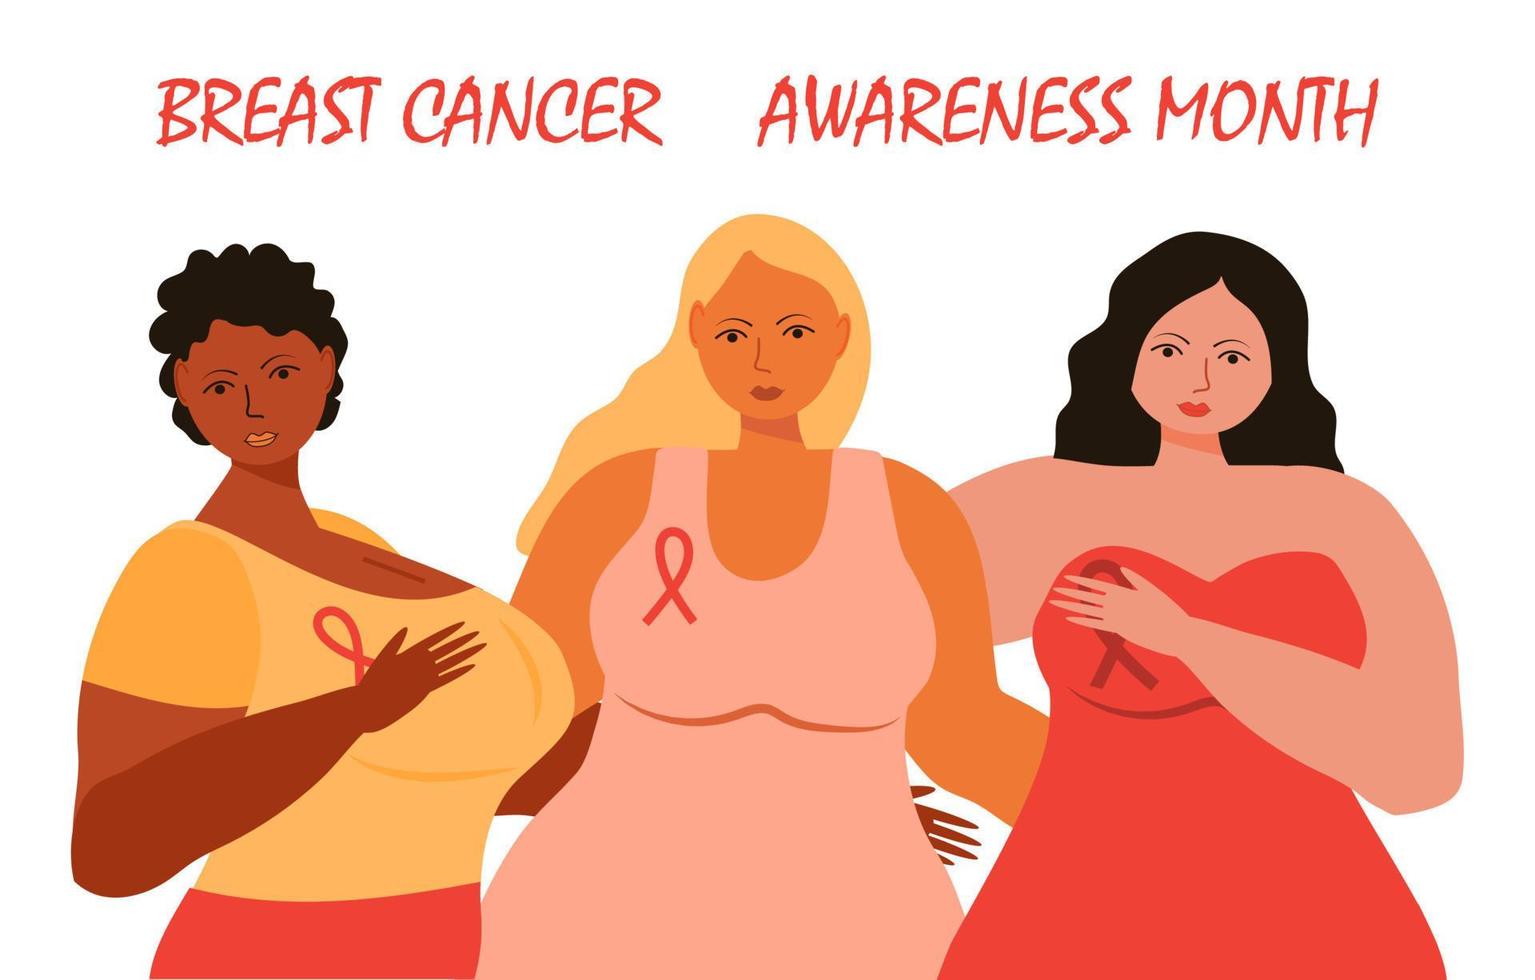 vettore di concetto del mese di consapevolezza del cancro al seno. ragazze di razza diversa si sostengono a vicenda. vengono mostrati nastri rosa sugli abiti.